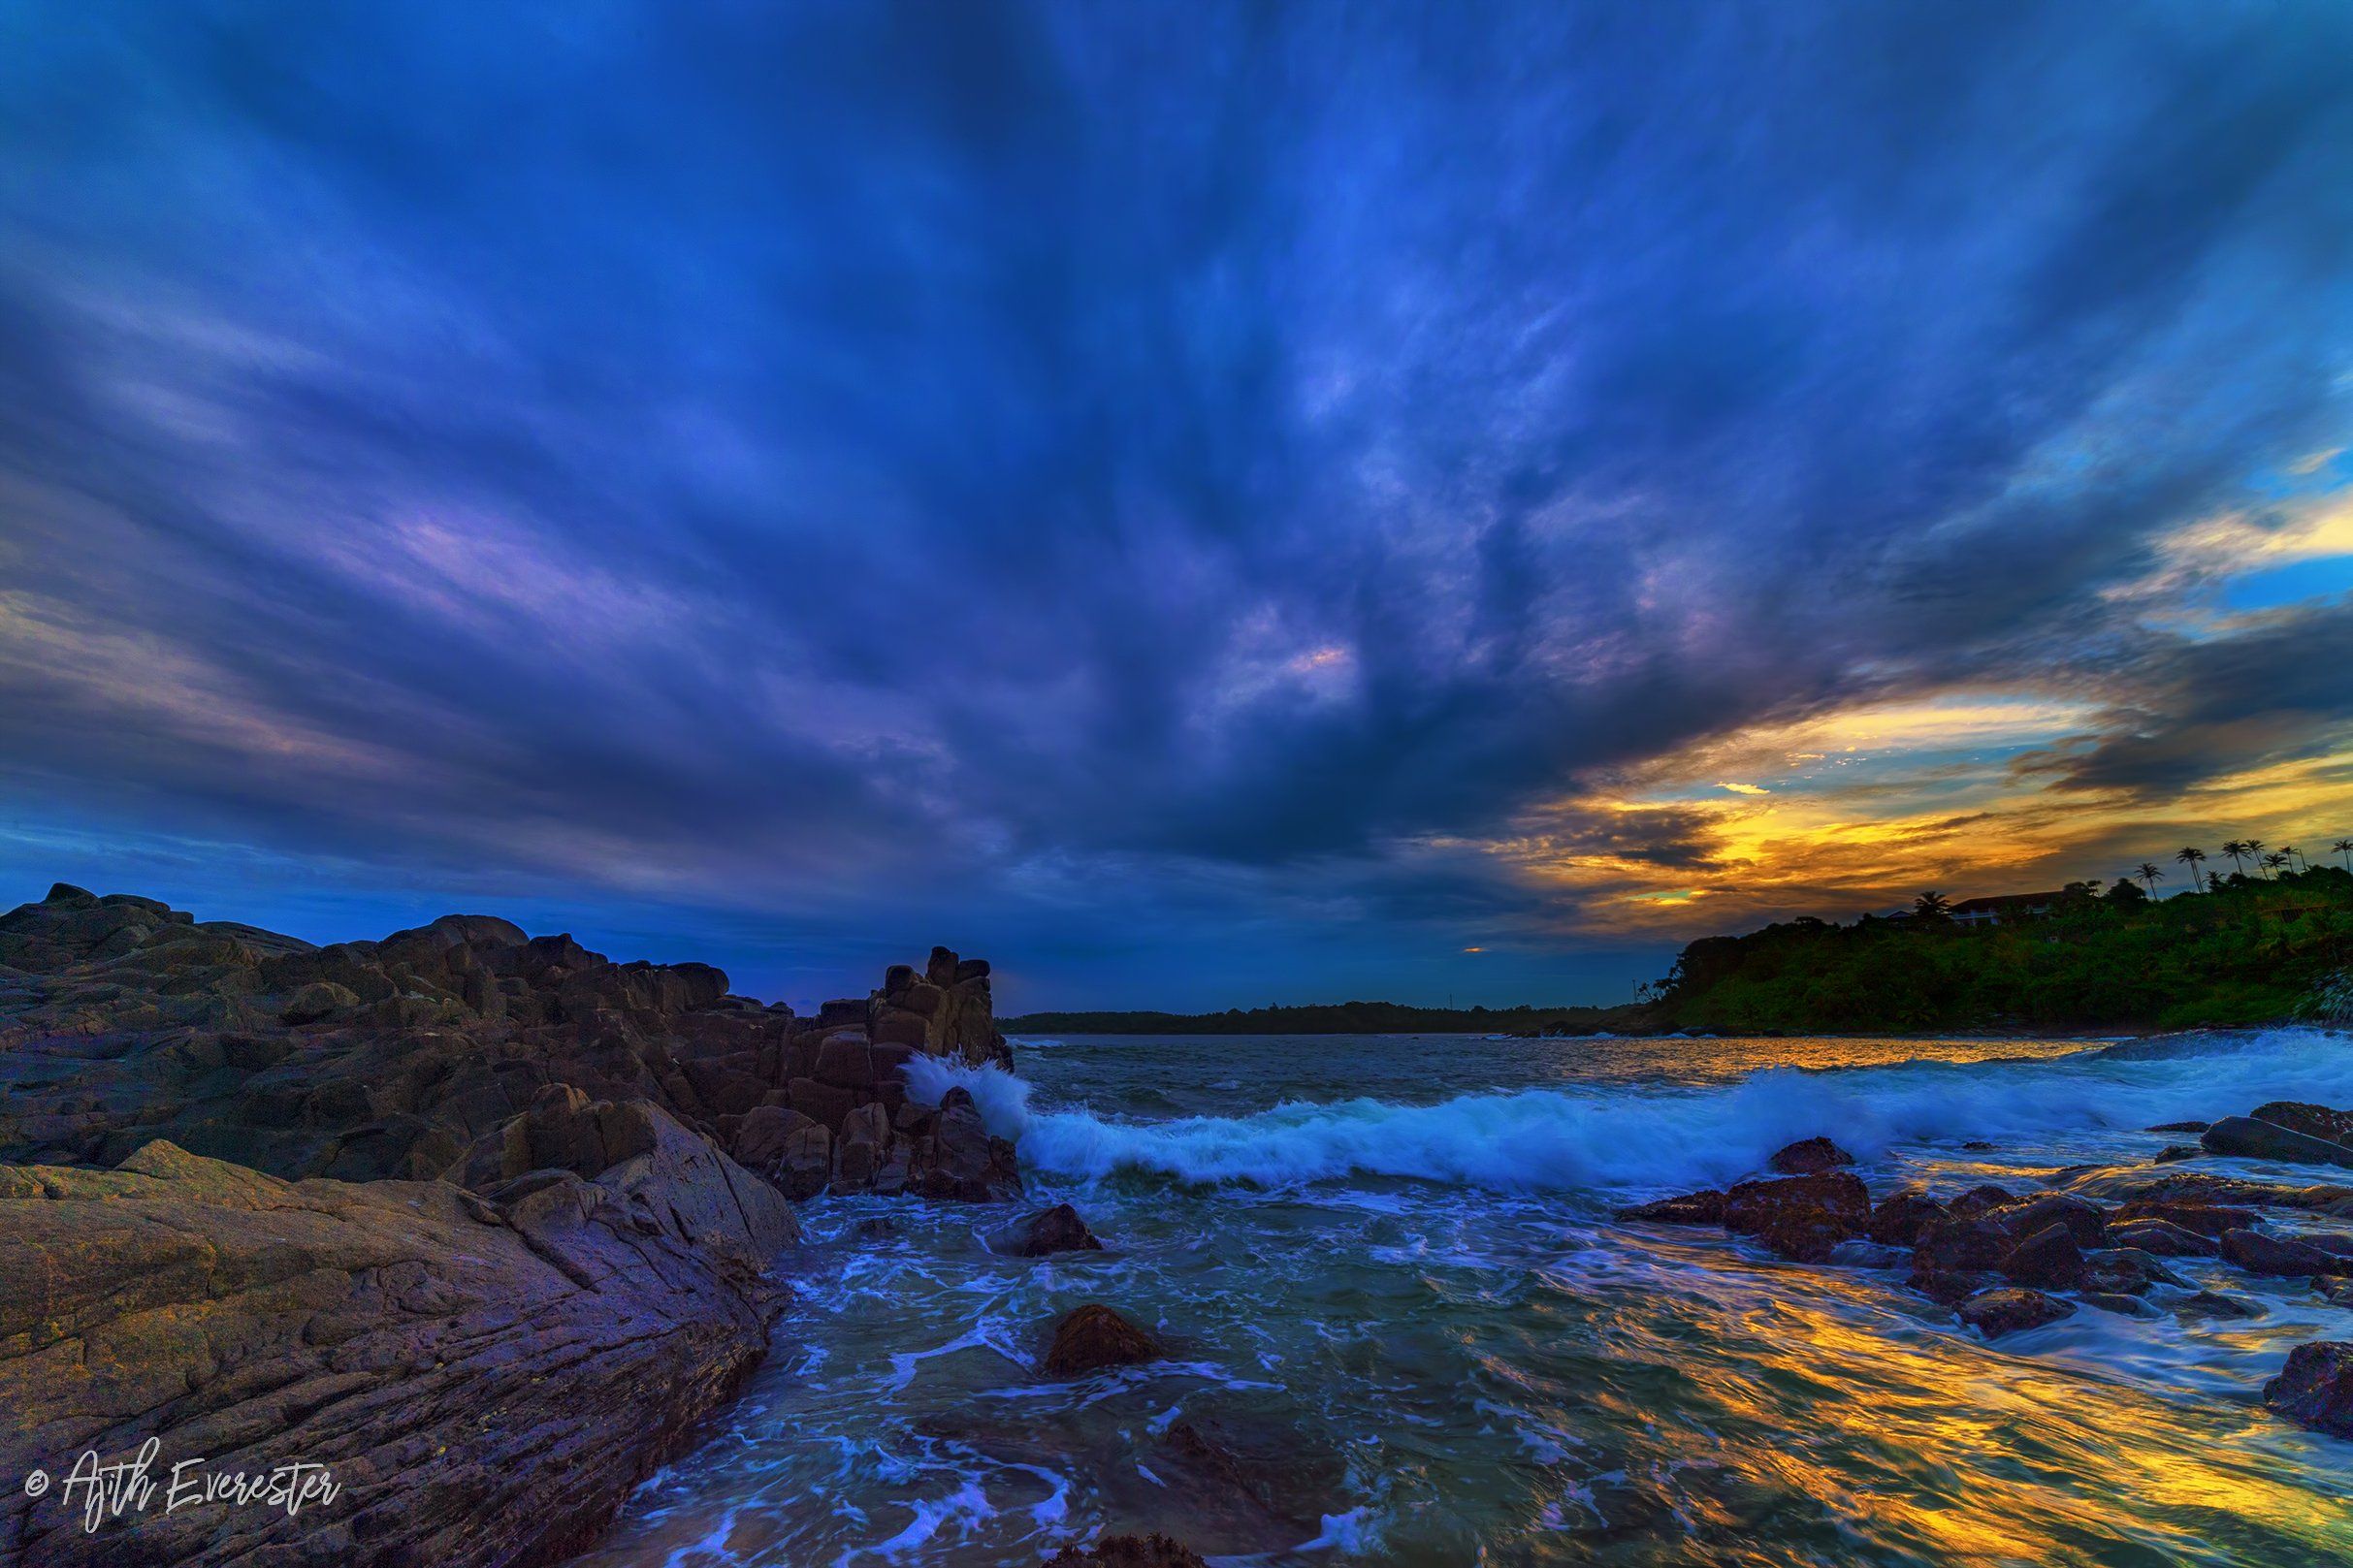 sunset, srilanka, colombo, beach, waves, blue sky, Nikon, rokinon , Ajith Everester